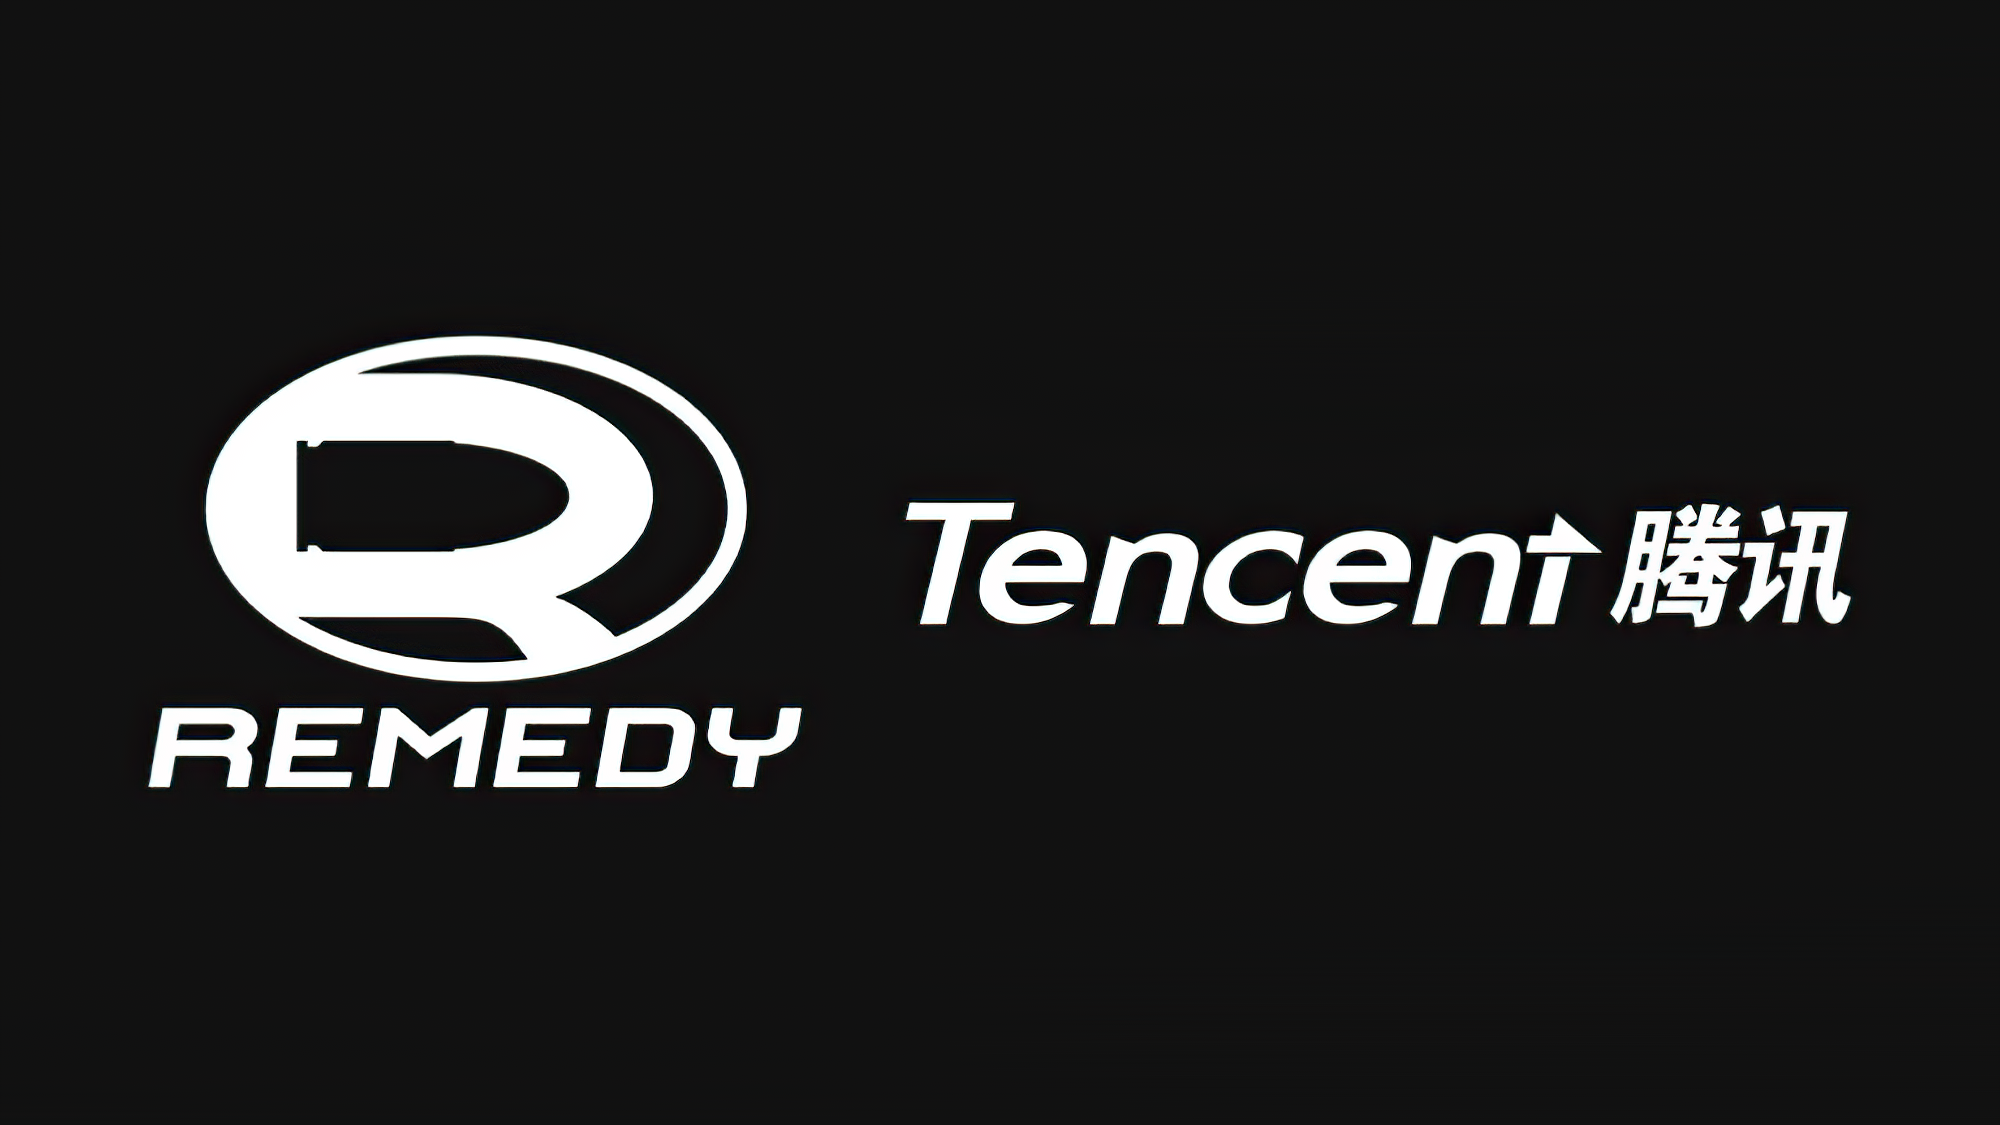 เตรียมตัวให้พร้อม!! กับโปรเจคใหม่ Remedy ร่วมมือ Tencent พัฒนาเกมแนว Shooting Co-op โดยใช้ชื่อ Vanguard